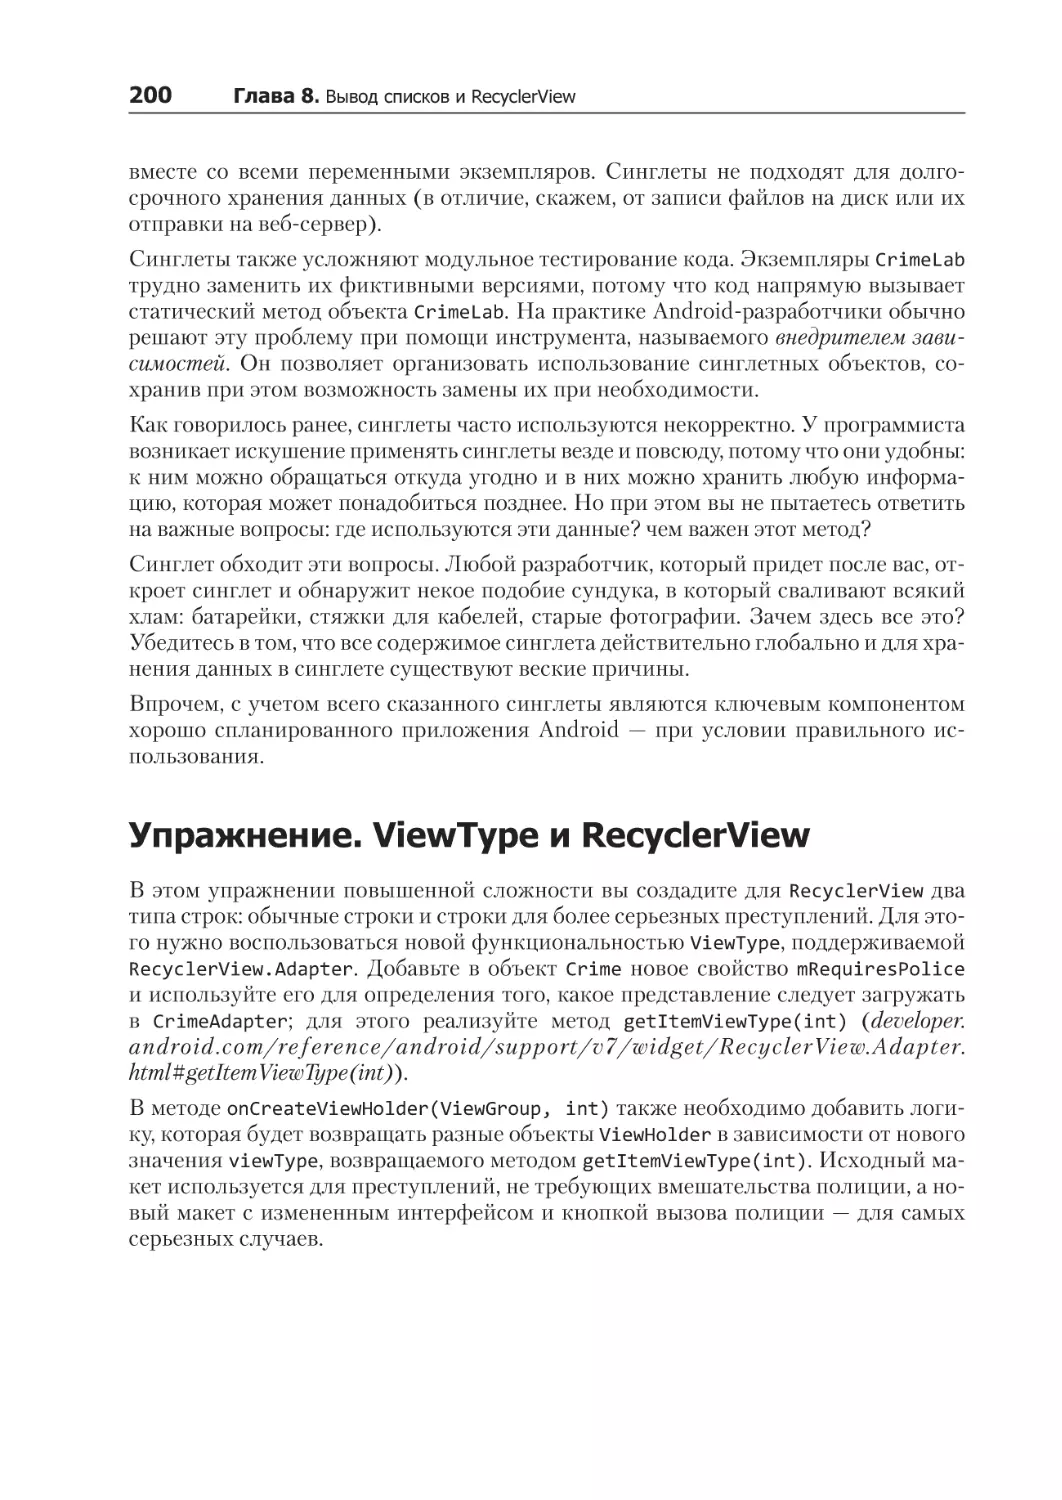 Упражнение. ViewType и RecyclerView